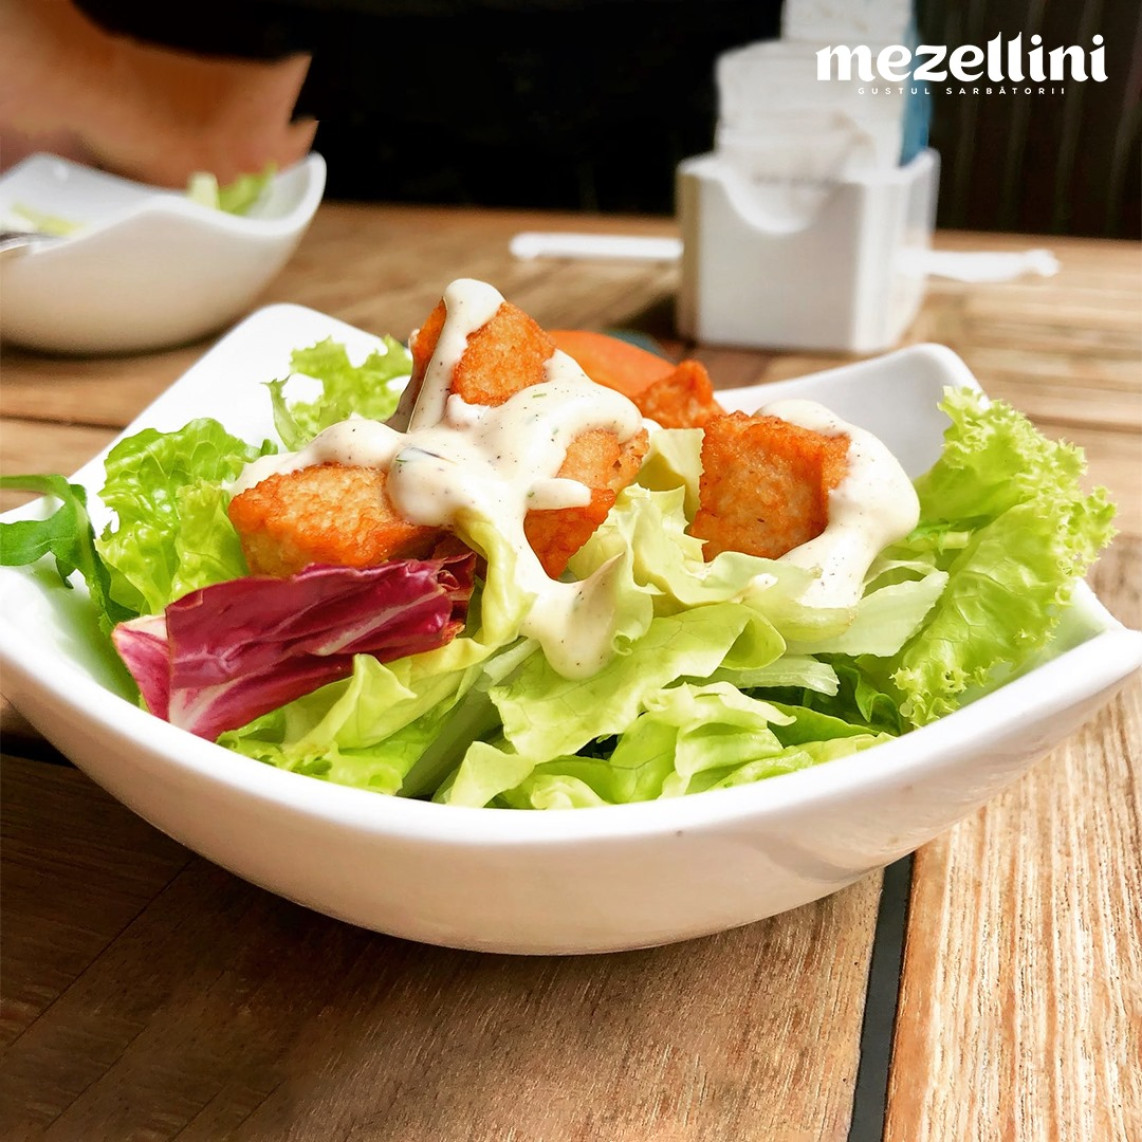 Salata cu piept de pui afumat Mezellini!